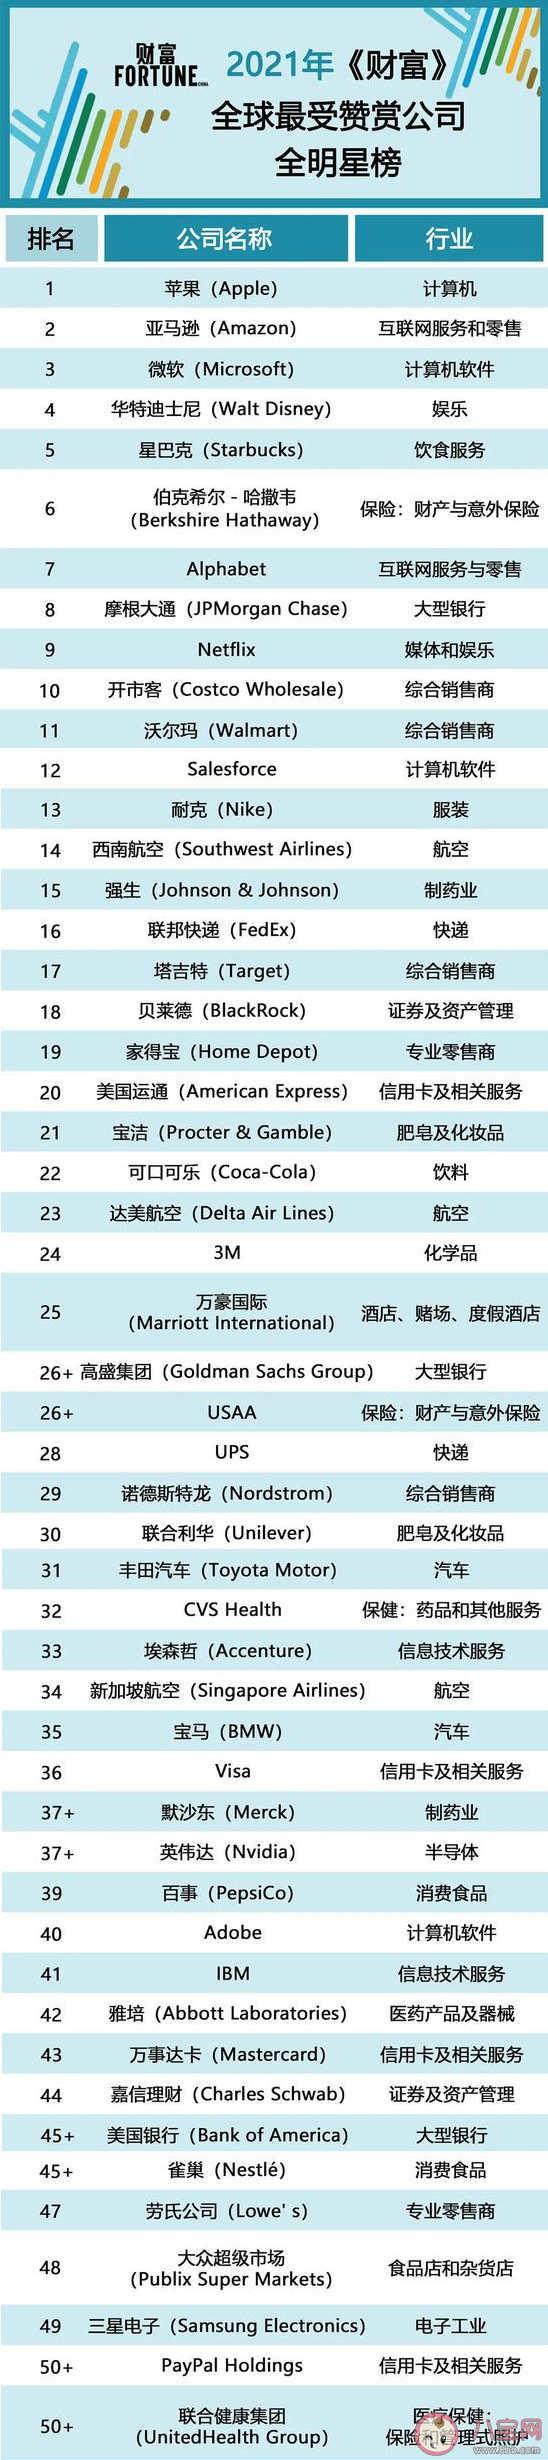 2021财富全球最受赞赏公司榜排名榜单 中国哪些公司入选